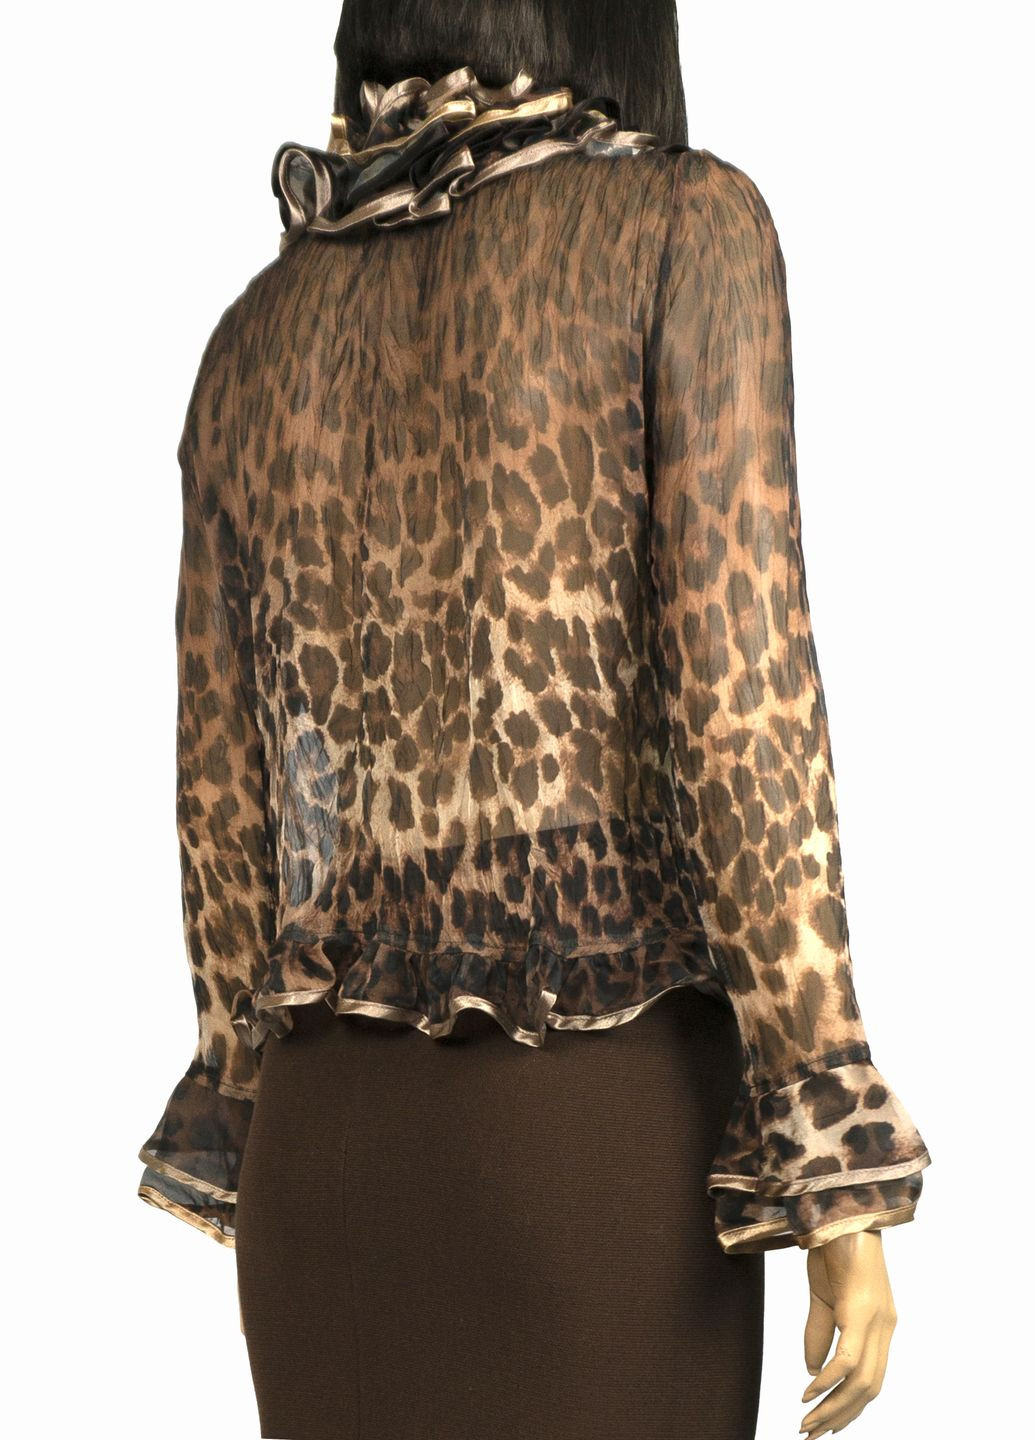 Коричневая женская шифоновая блуза с баской lw-116680-11 коричневый Lowett